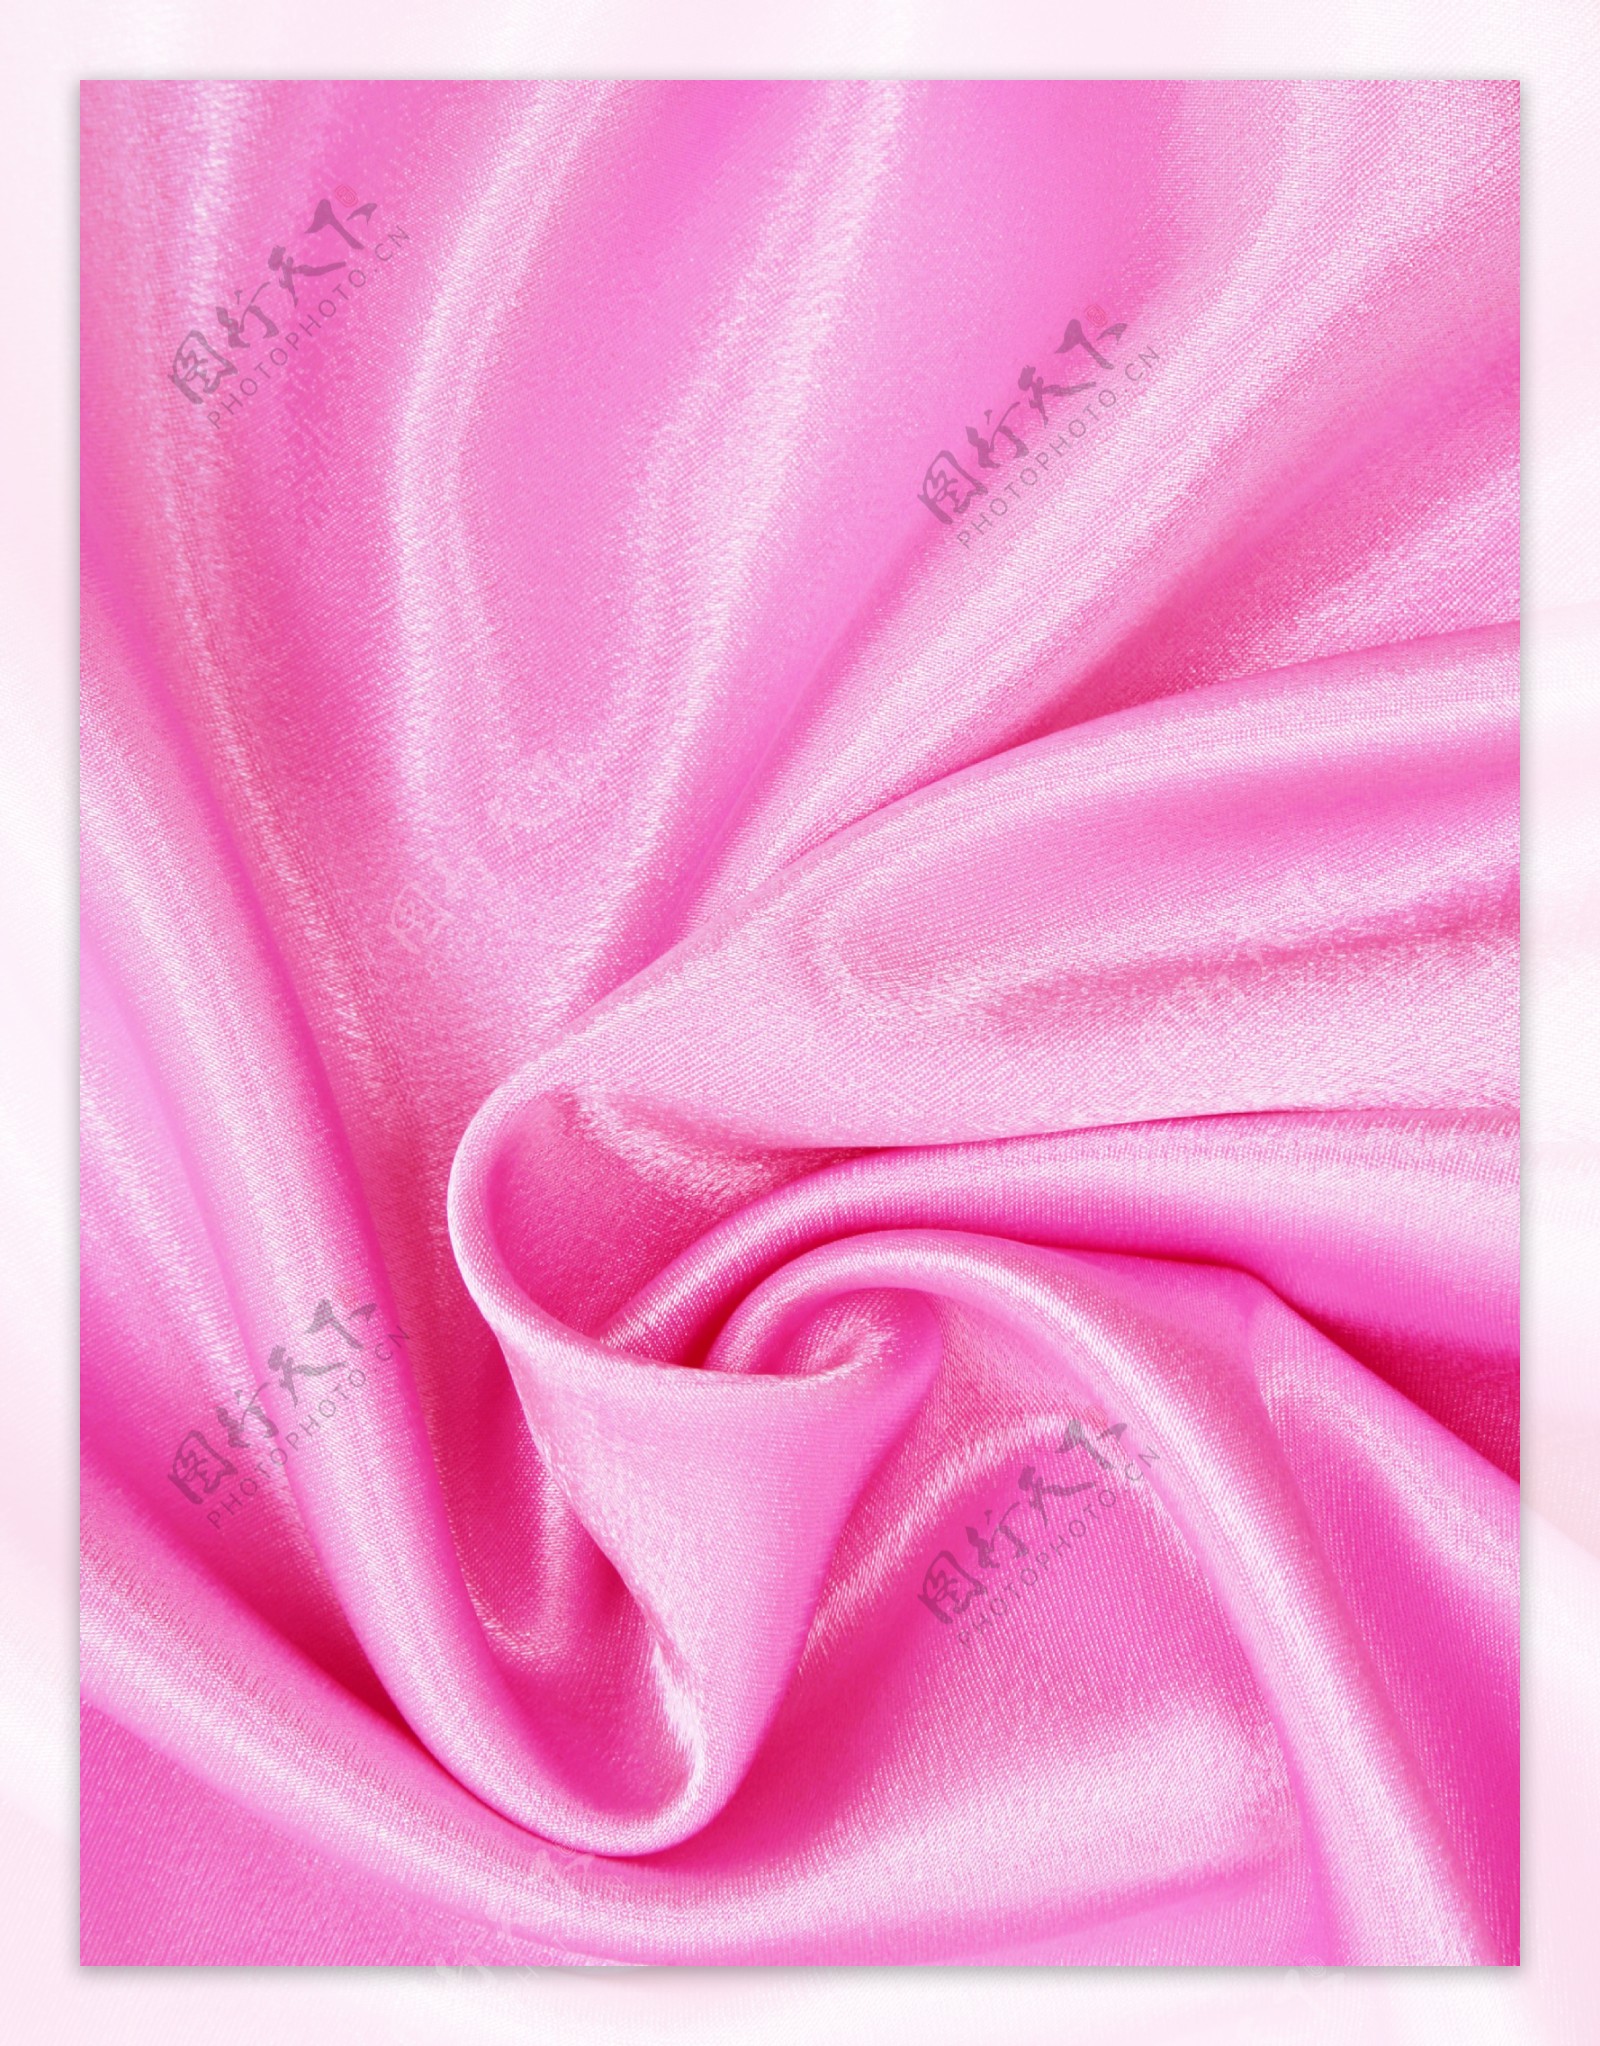 粉色丝绸图片